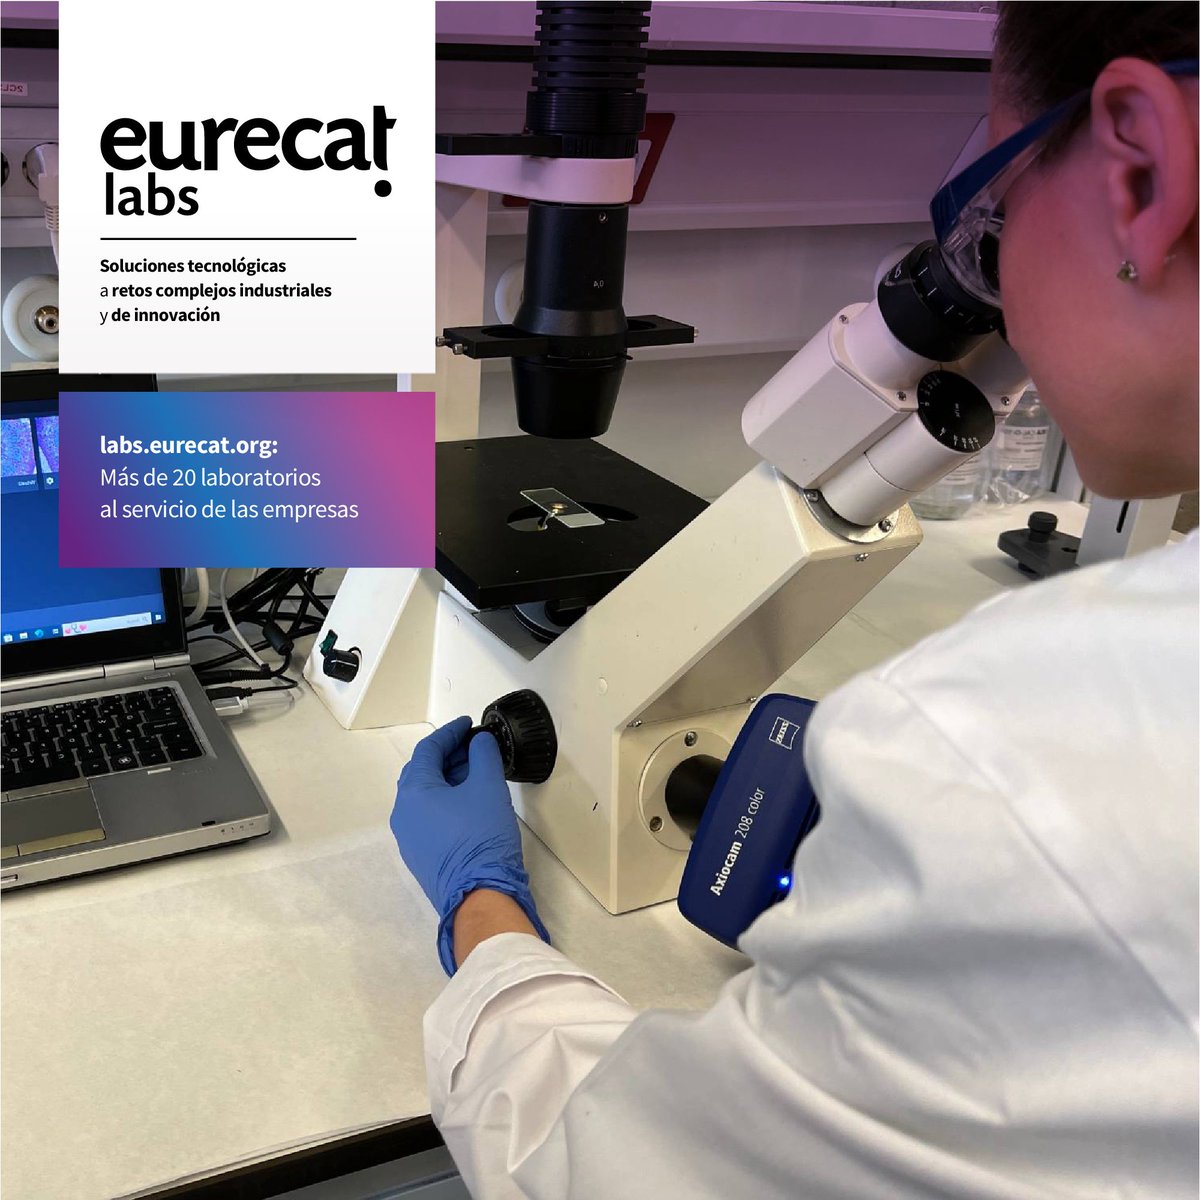 Muy satisfech@s 💪 por la acogida de #EurecatLabs labs.eurecat.org, el proyecto de impulso a nuestros laboratorios con más de 2⃣0⃣0⃣ servicios, también para impulsar proyectos complejos.

#EurecatLabs suma las capacidades de las áreas de investigación y de nuestro equipo